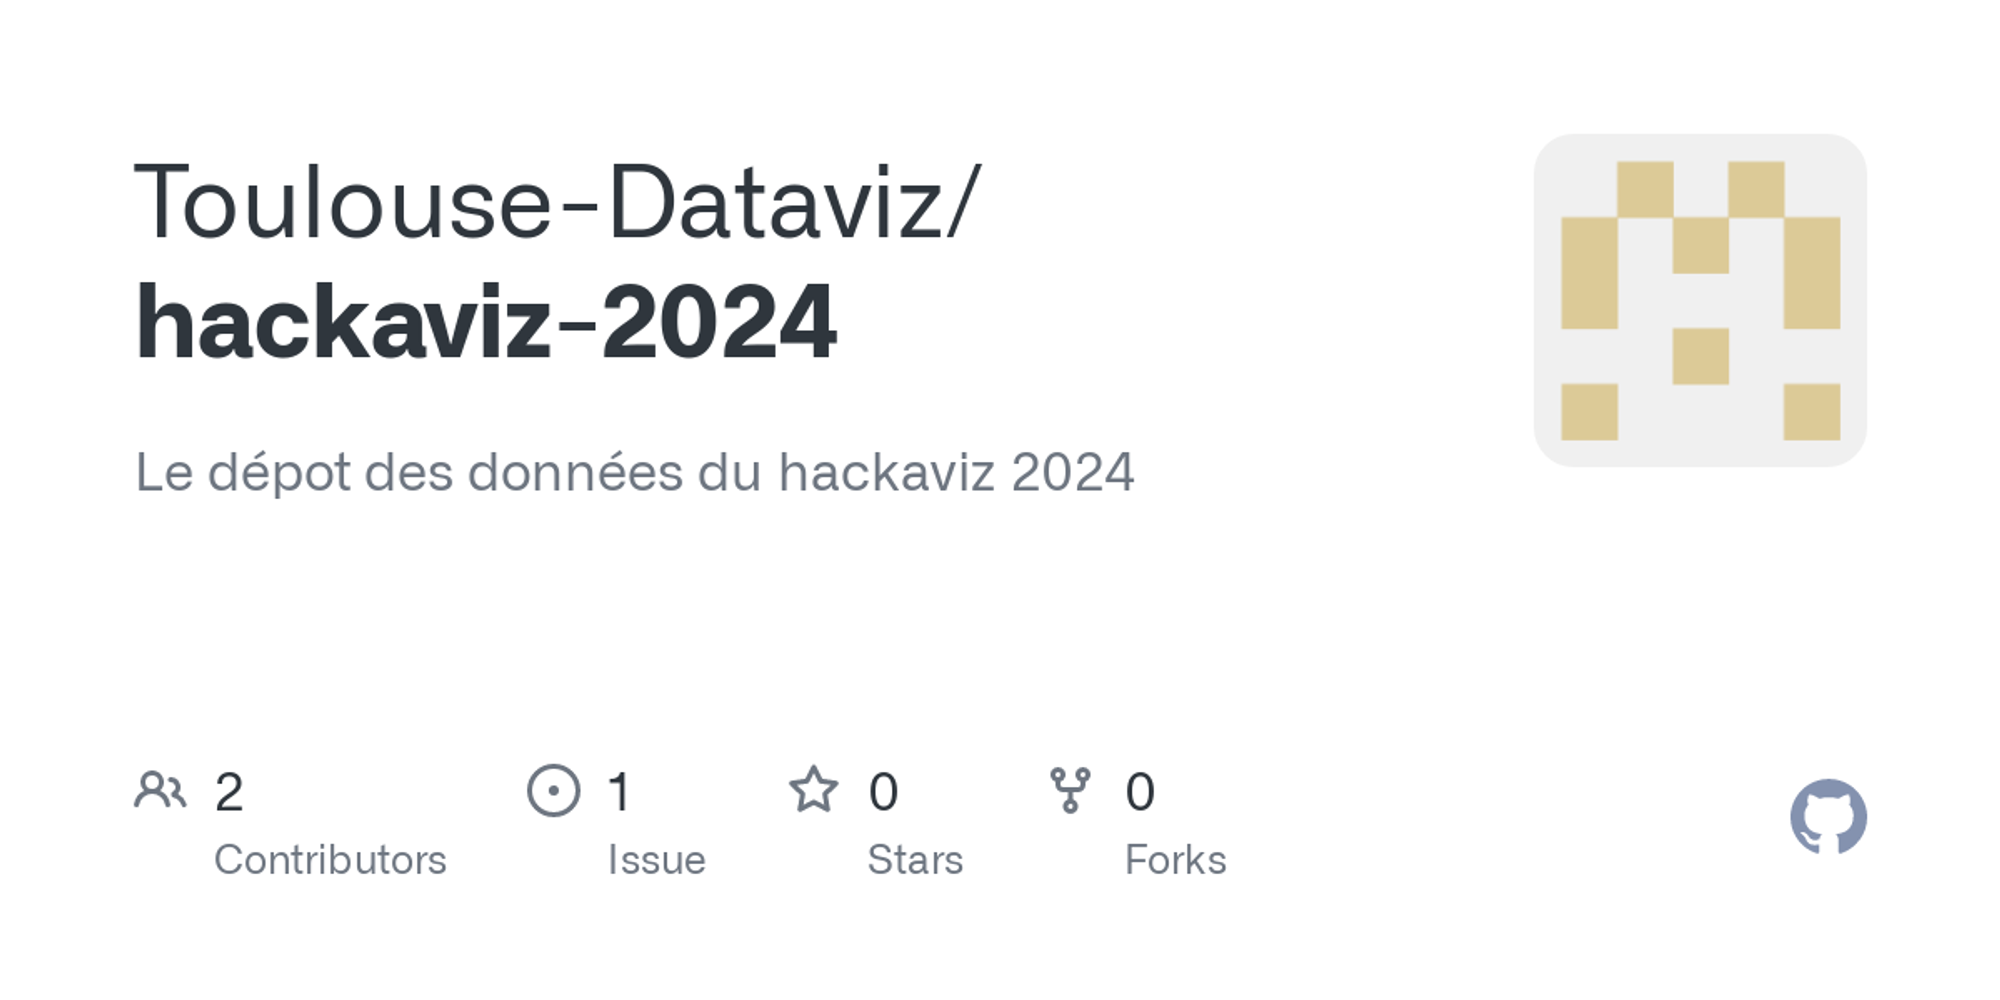 GitHub - Toulouse-Dataviz/hackaviz-2024: Le dépot des données du hackaviz 2024